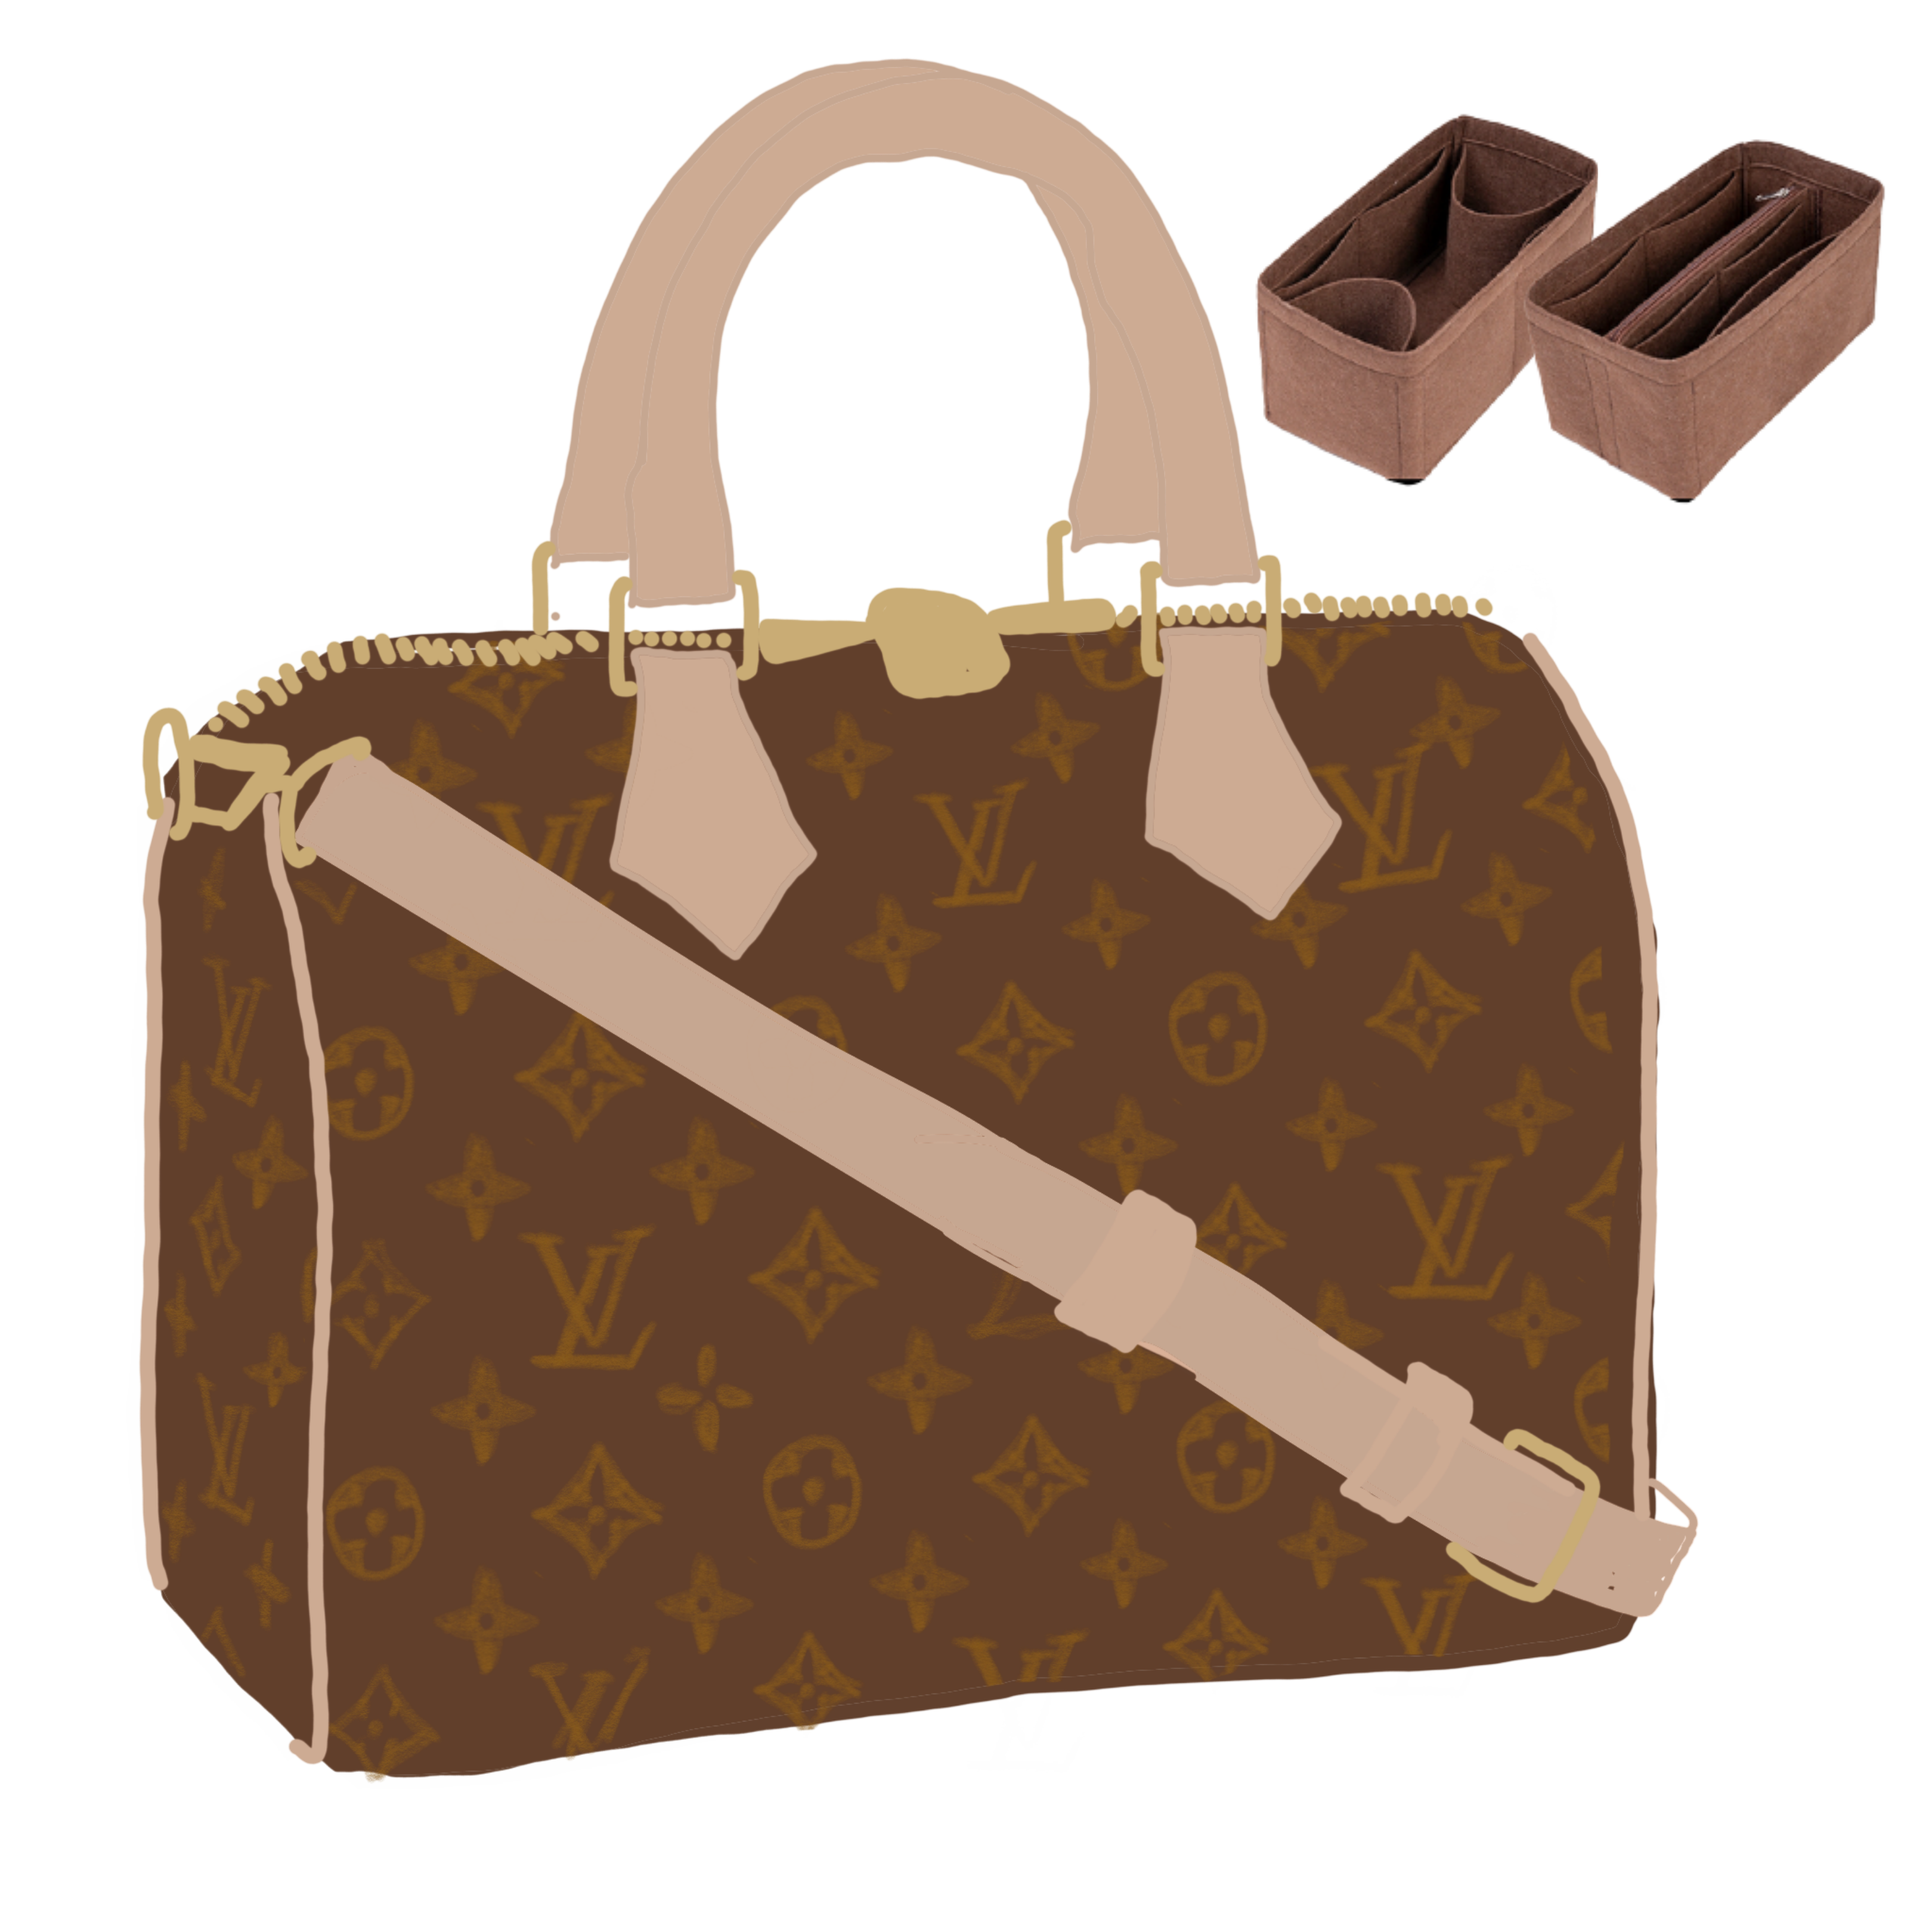 Louis Vuitton Speedy Handbag Organizer and Structural Support.